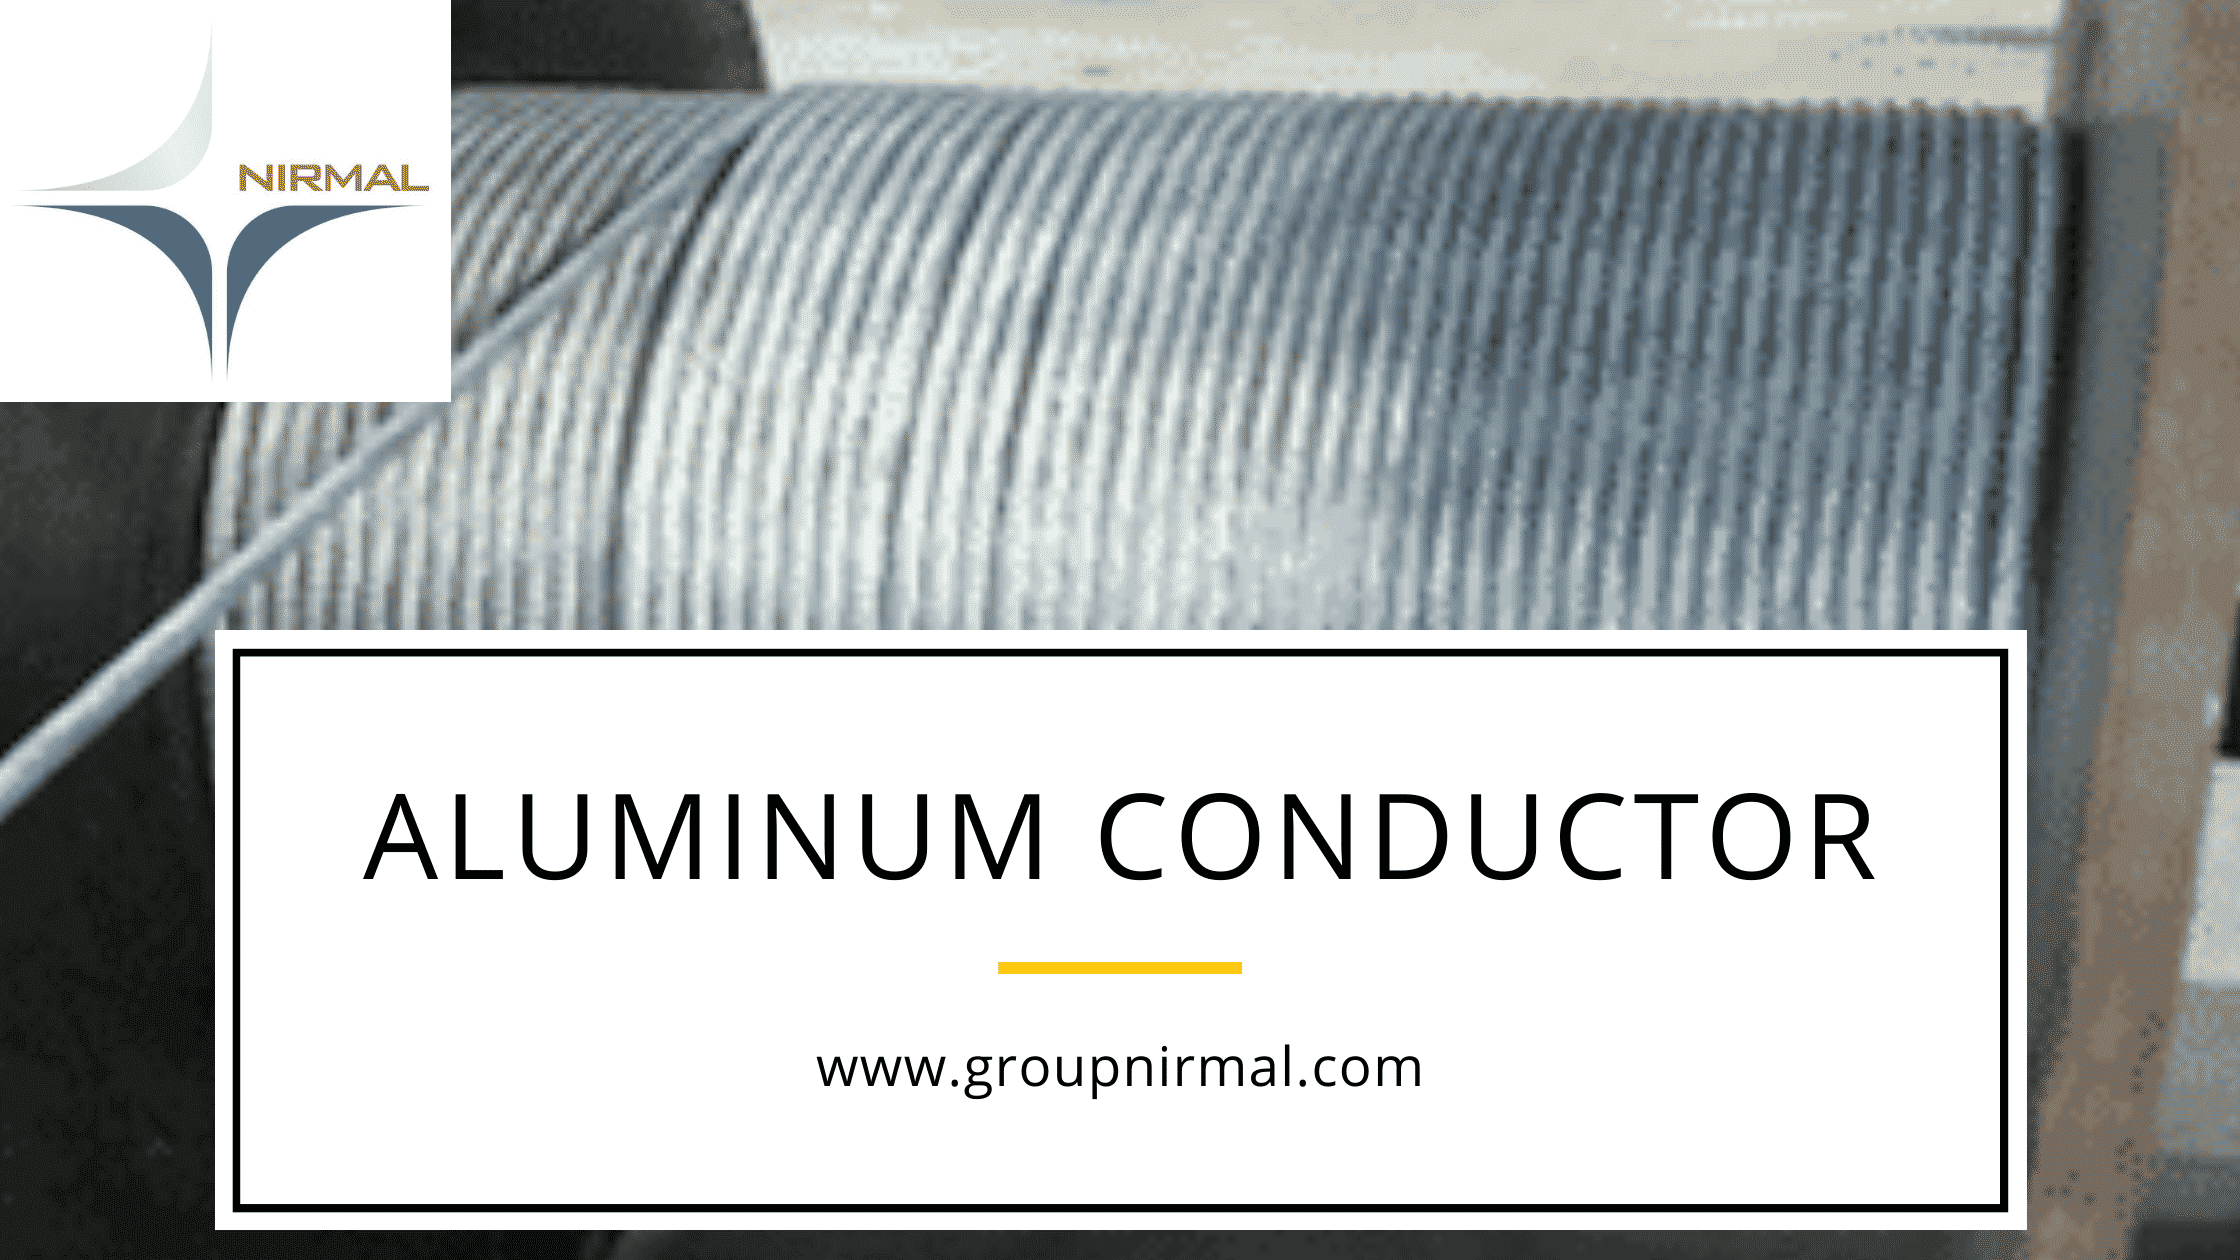 Aluminum conductors